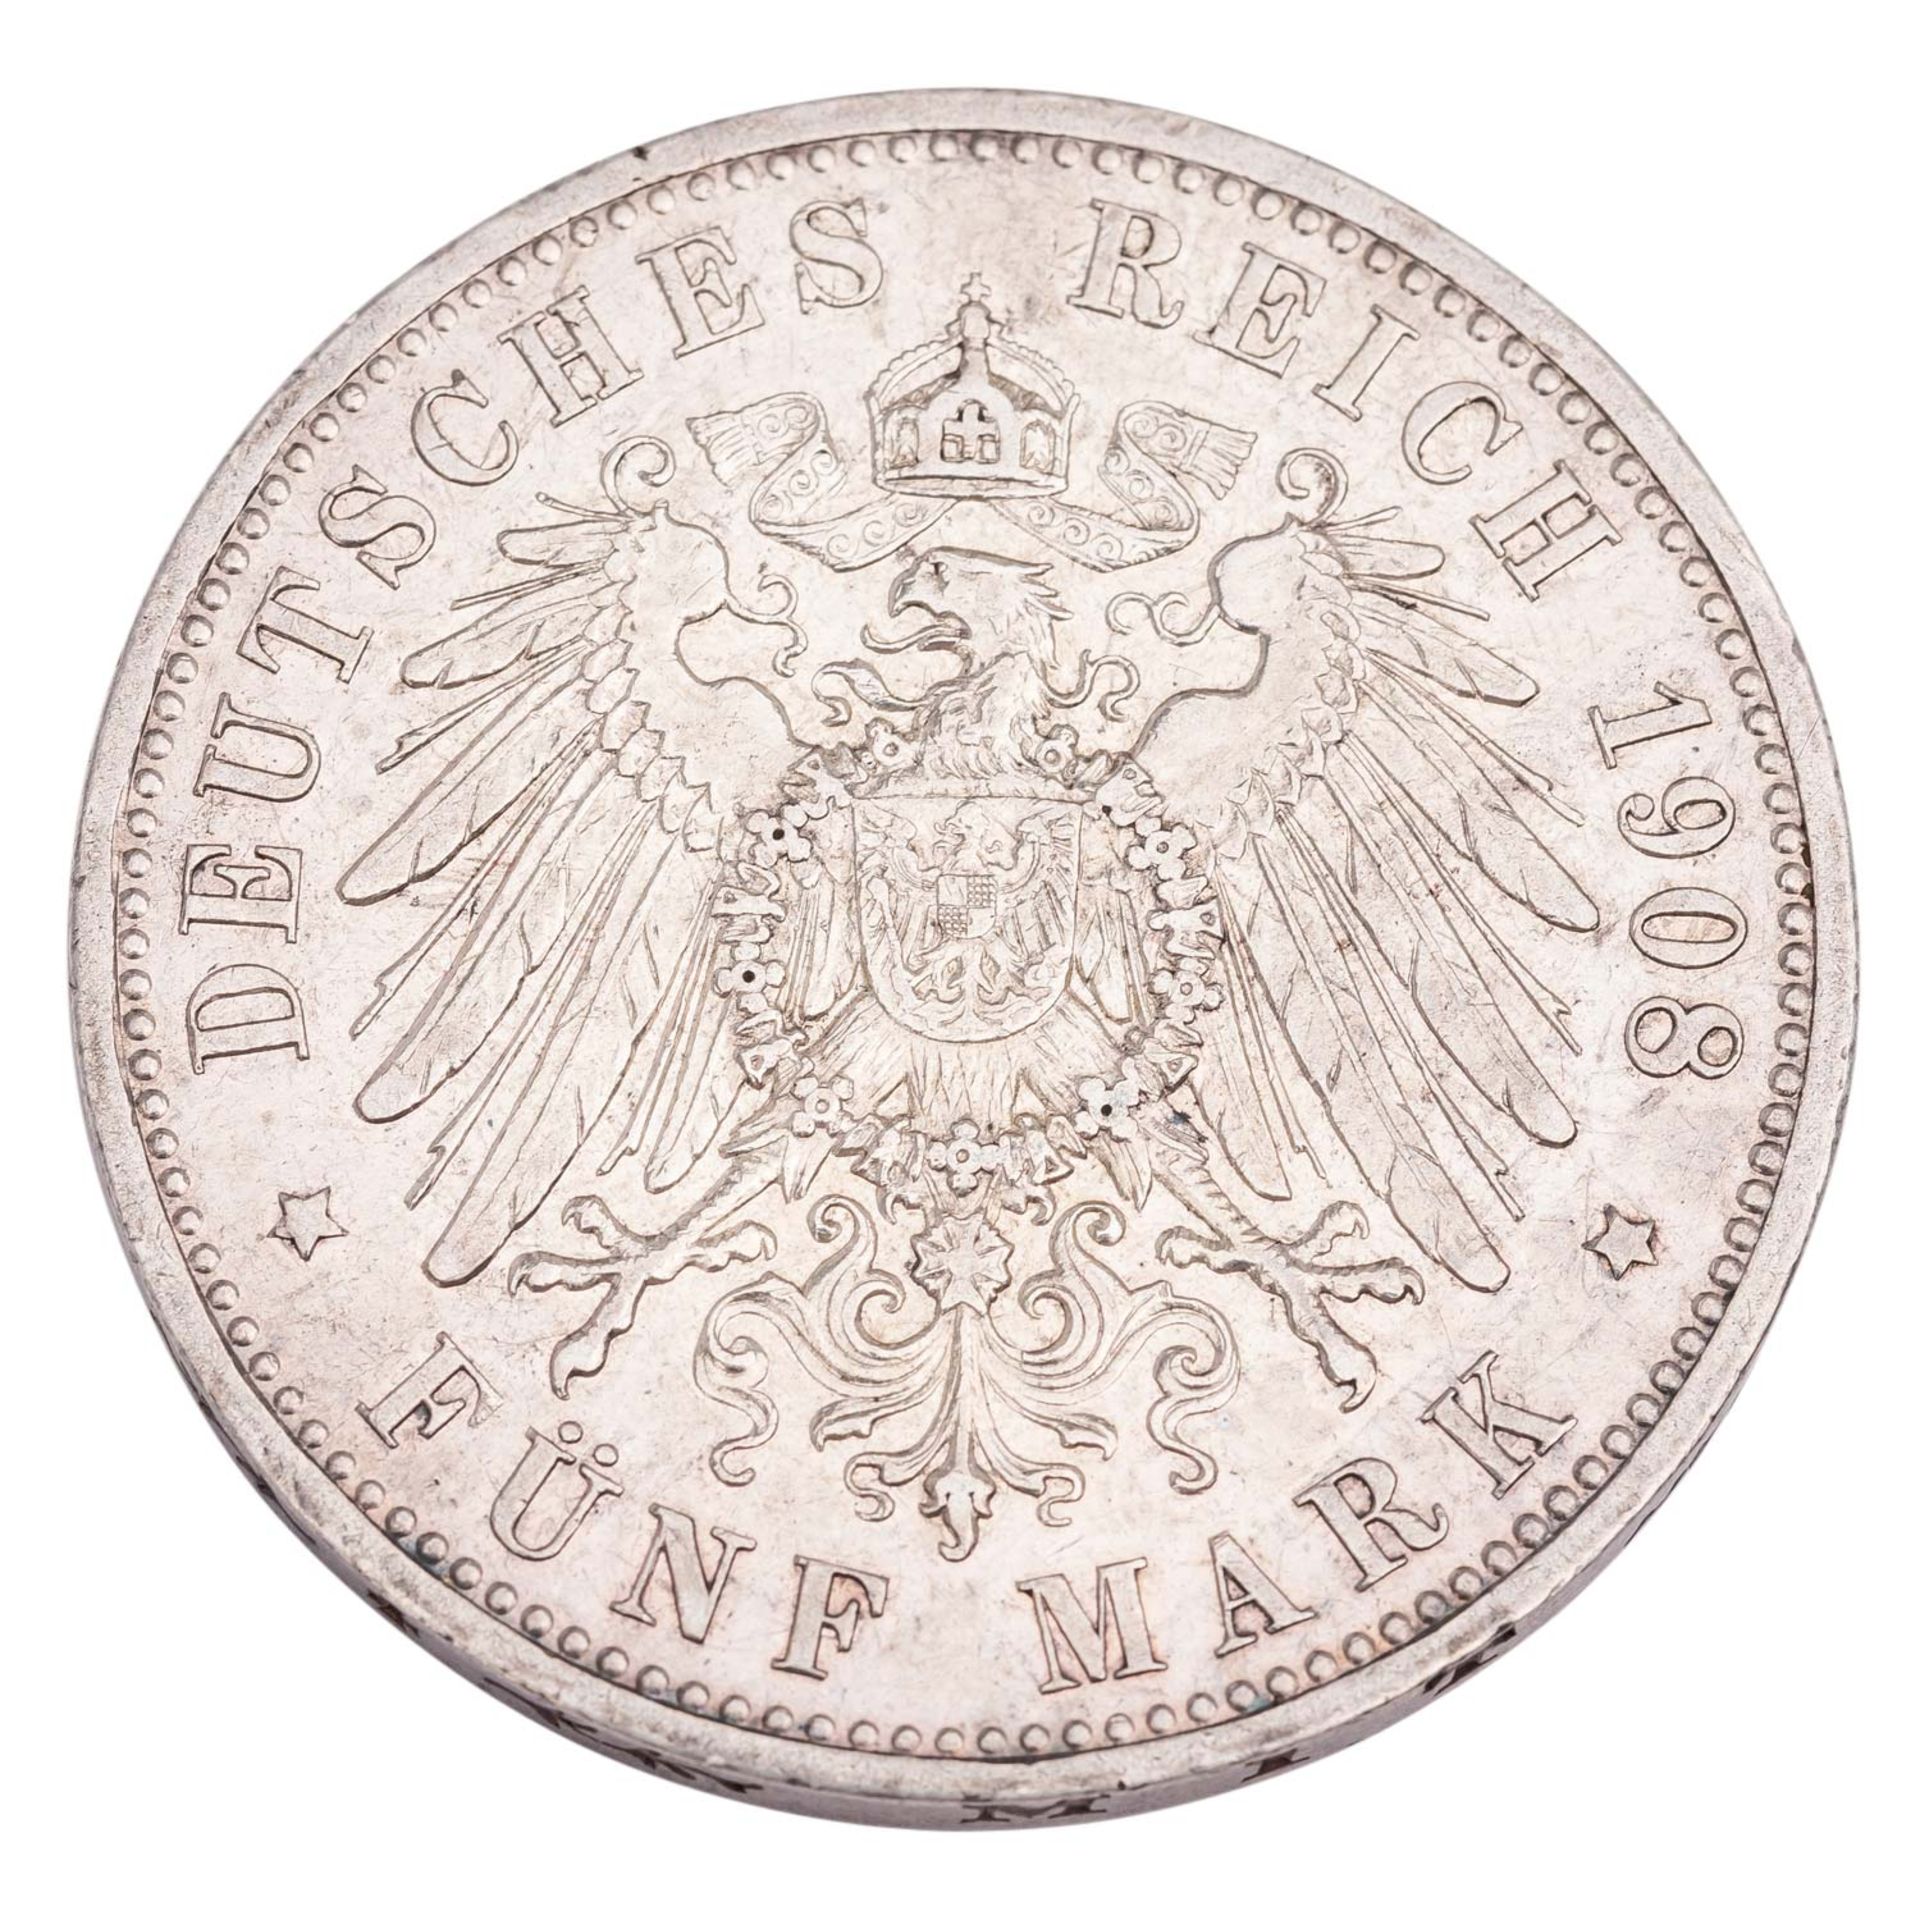 Deutsches Kaiserreich / Hansestadt Lübeck - 5 Mark 1908, - Image 2 of 2